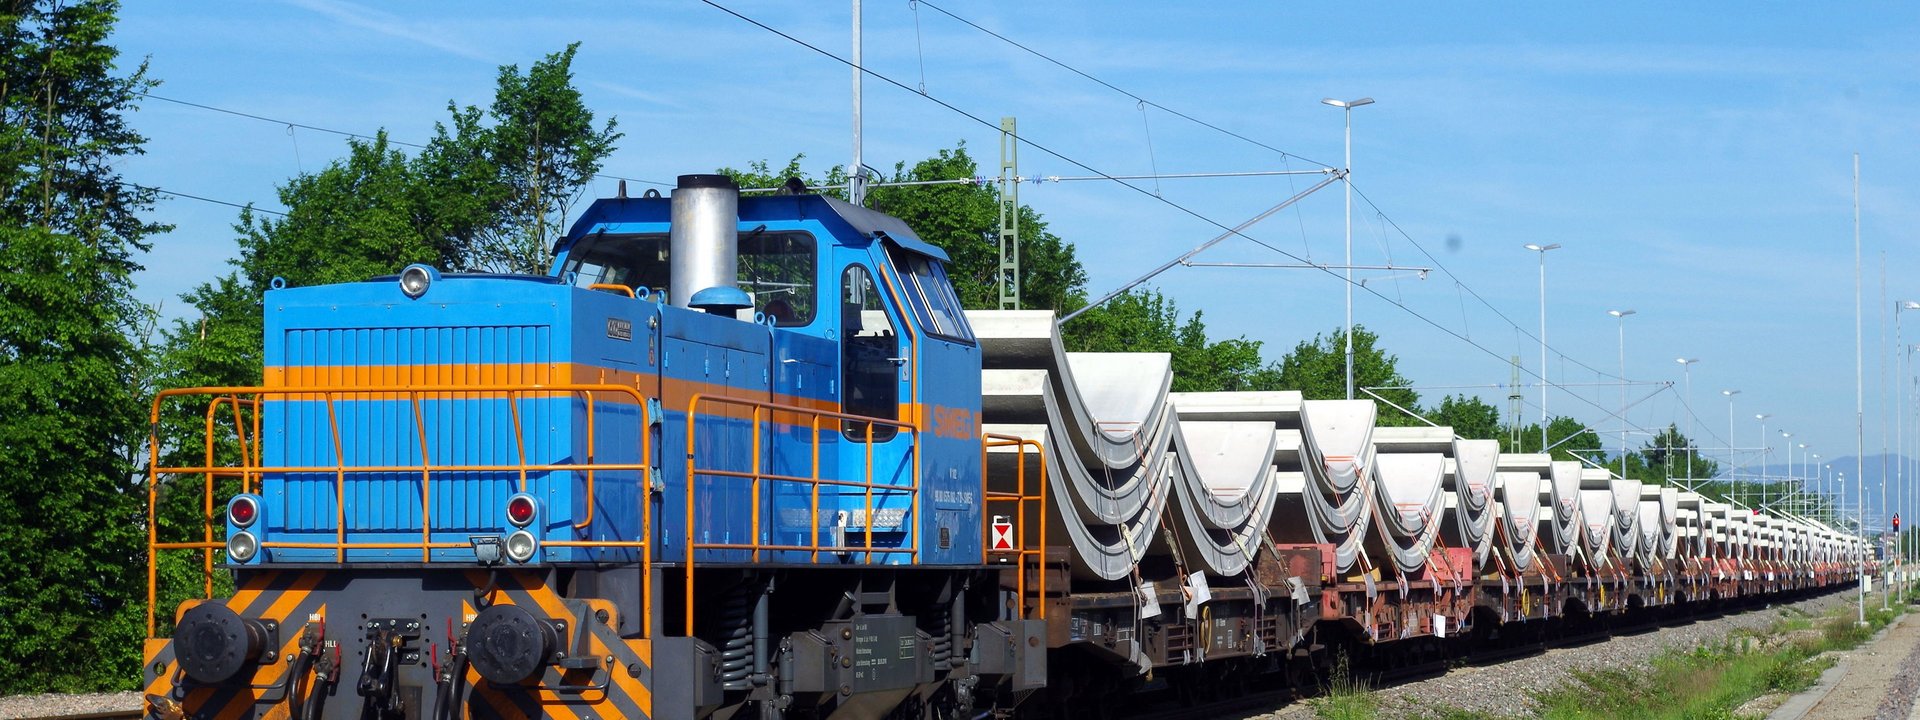 Güterzug mit großen halbrunden Betonteilen als Ladung